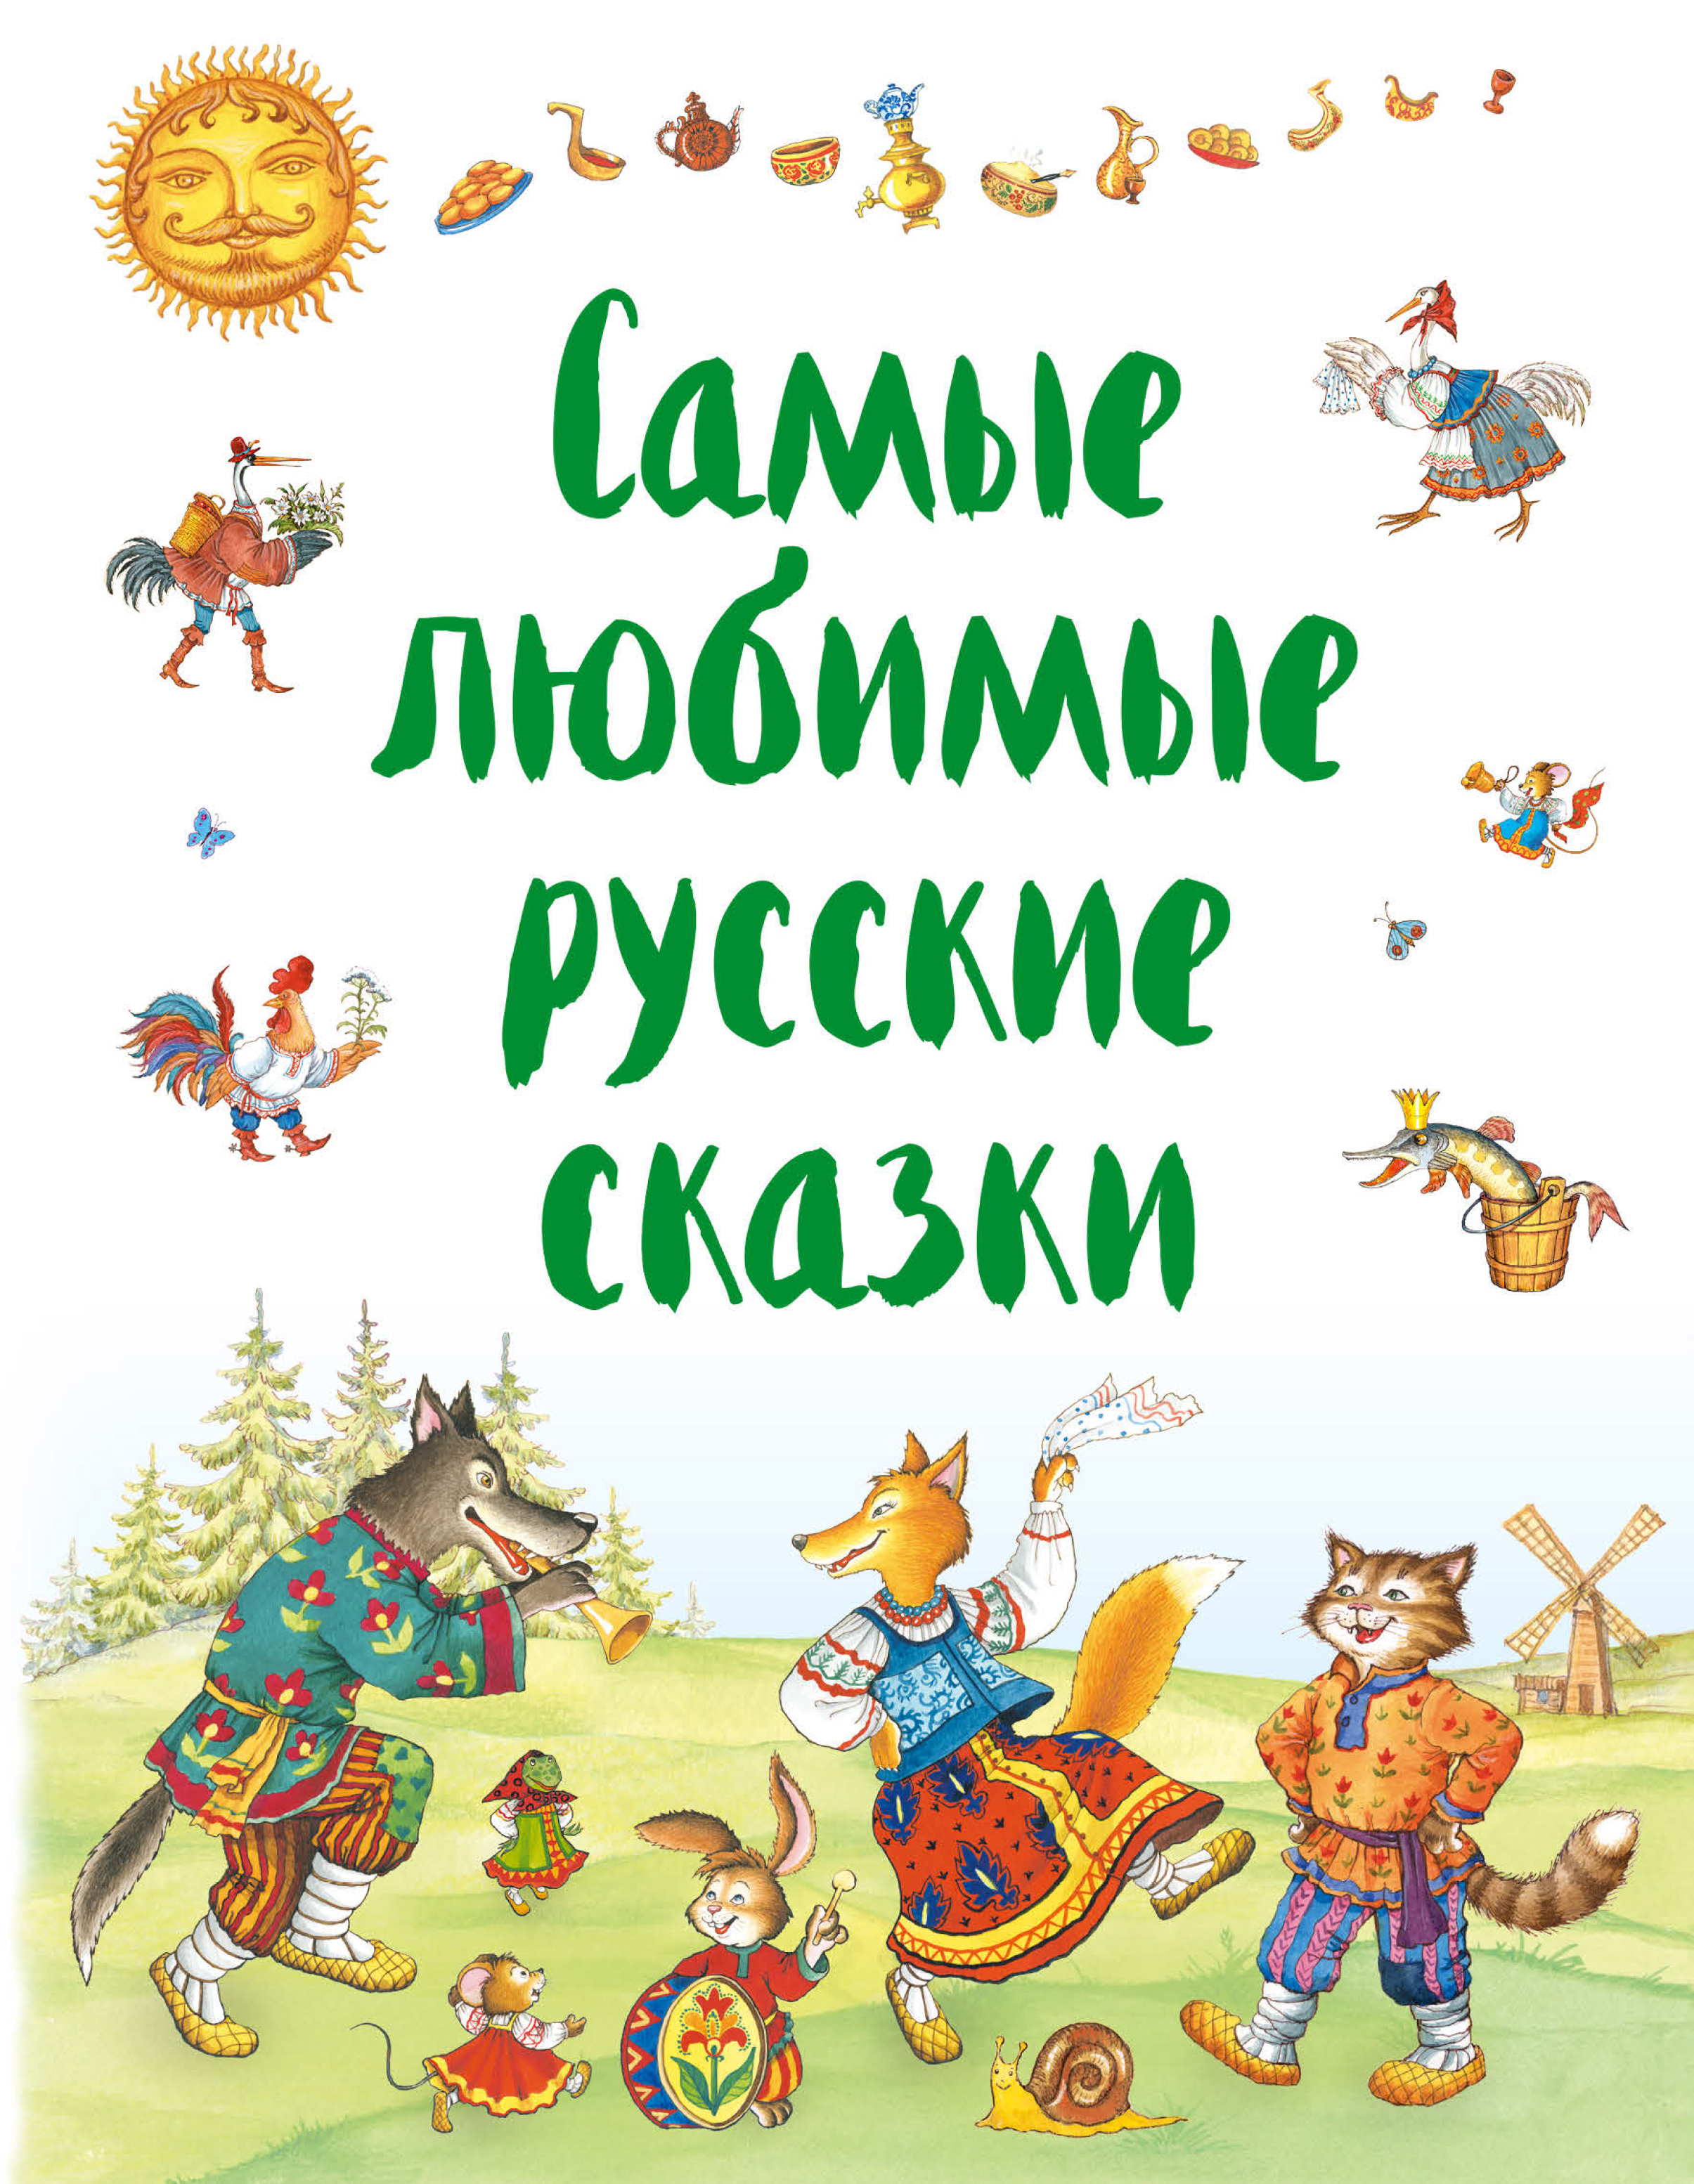 Русские книги сказки: Серии книг издательства ЭКСМО